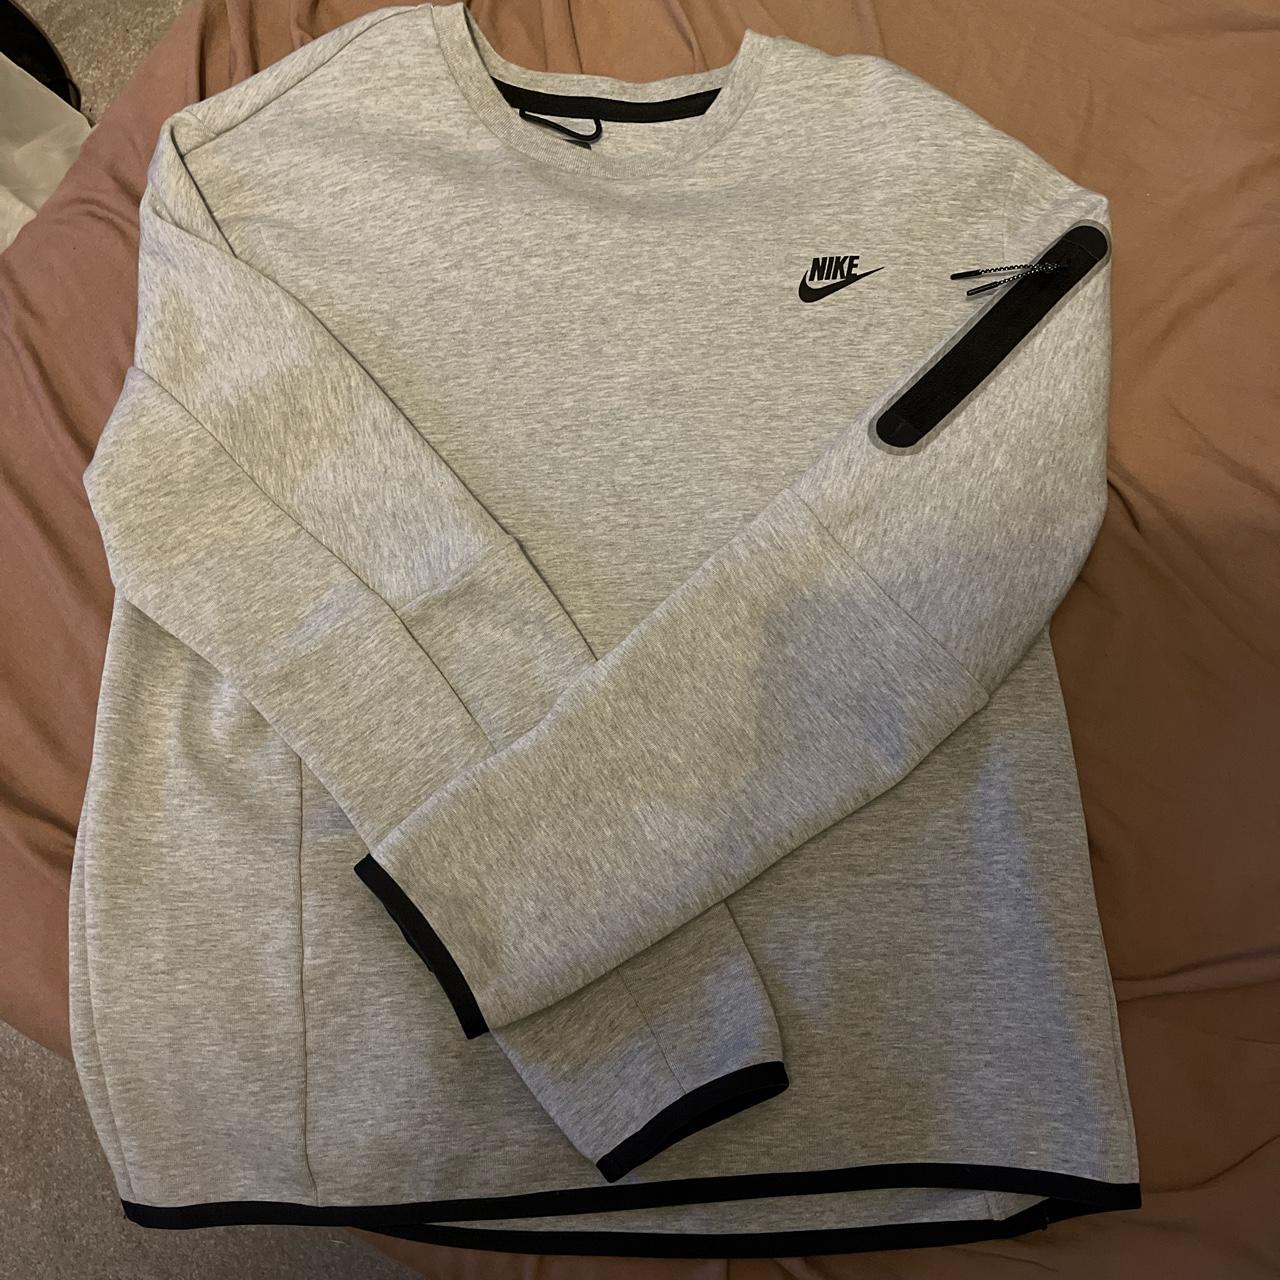 Nike tech fleece sweatshirt ,,worn a few times... - Depop